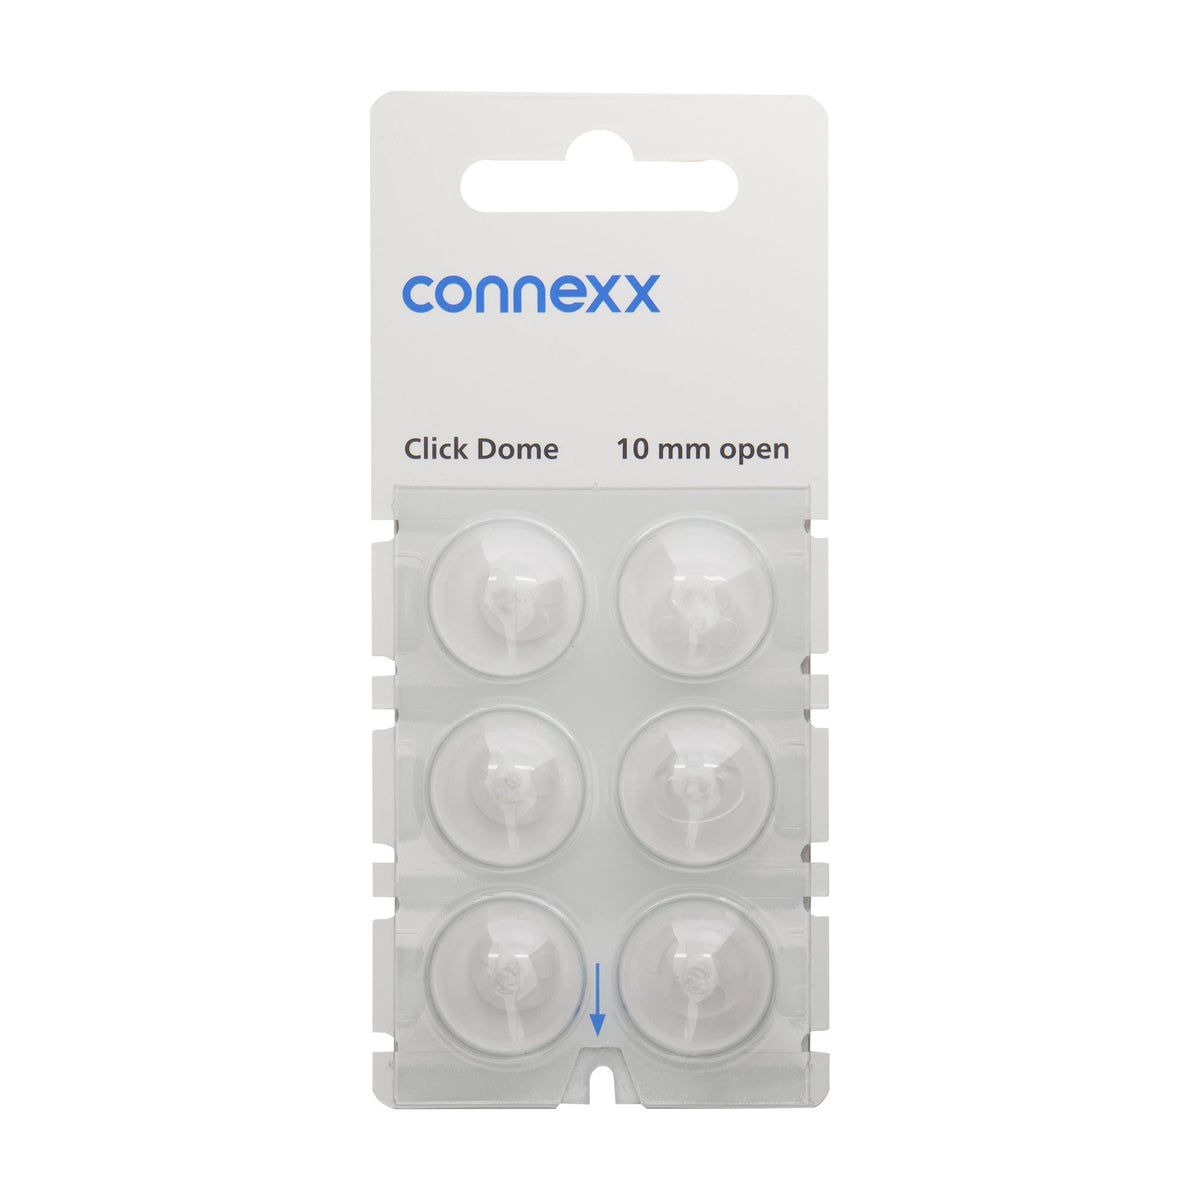 Connexx Click Dome 10mm Open